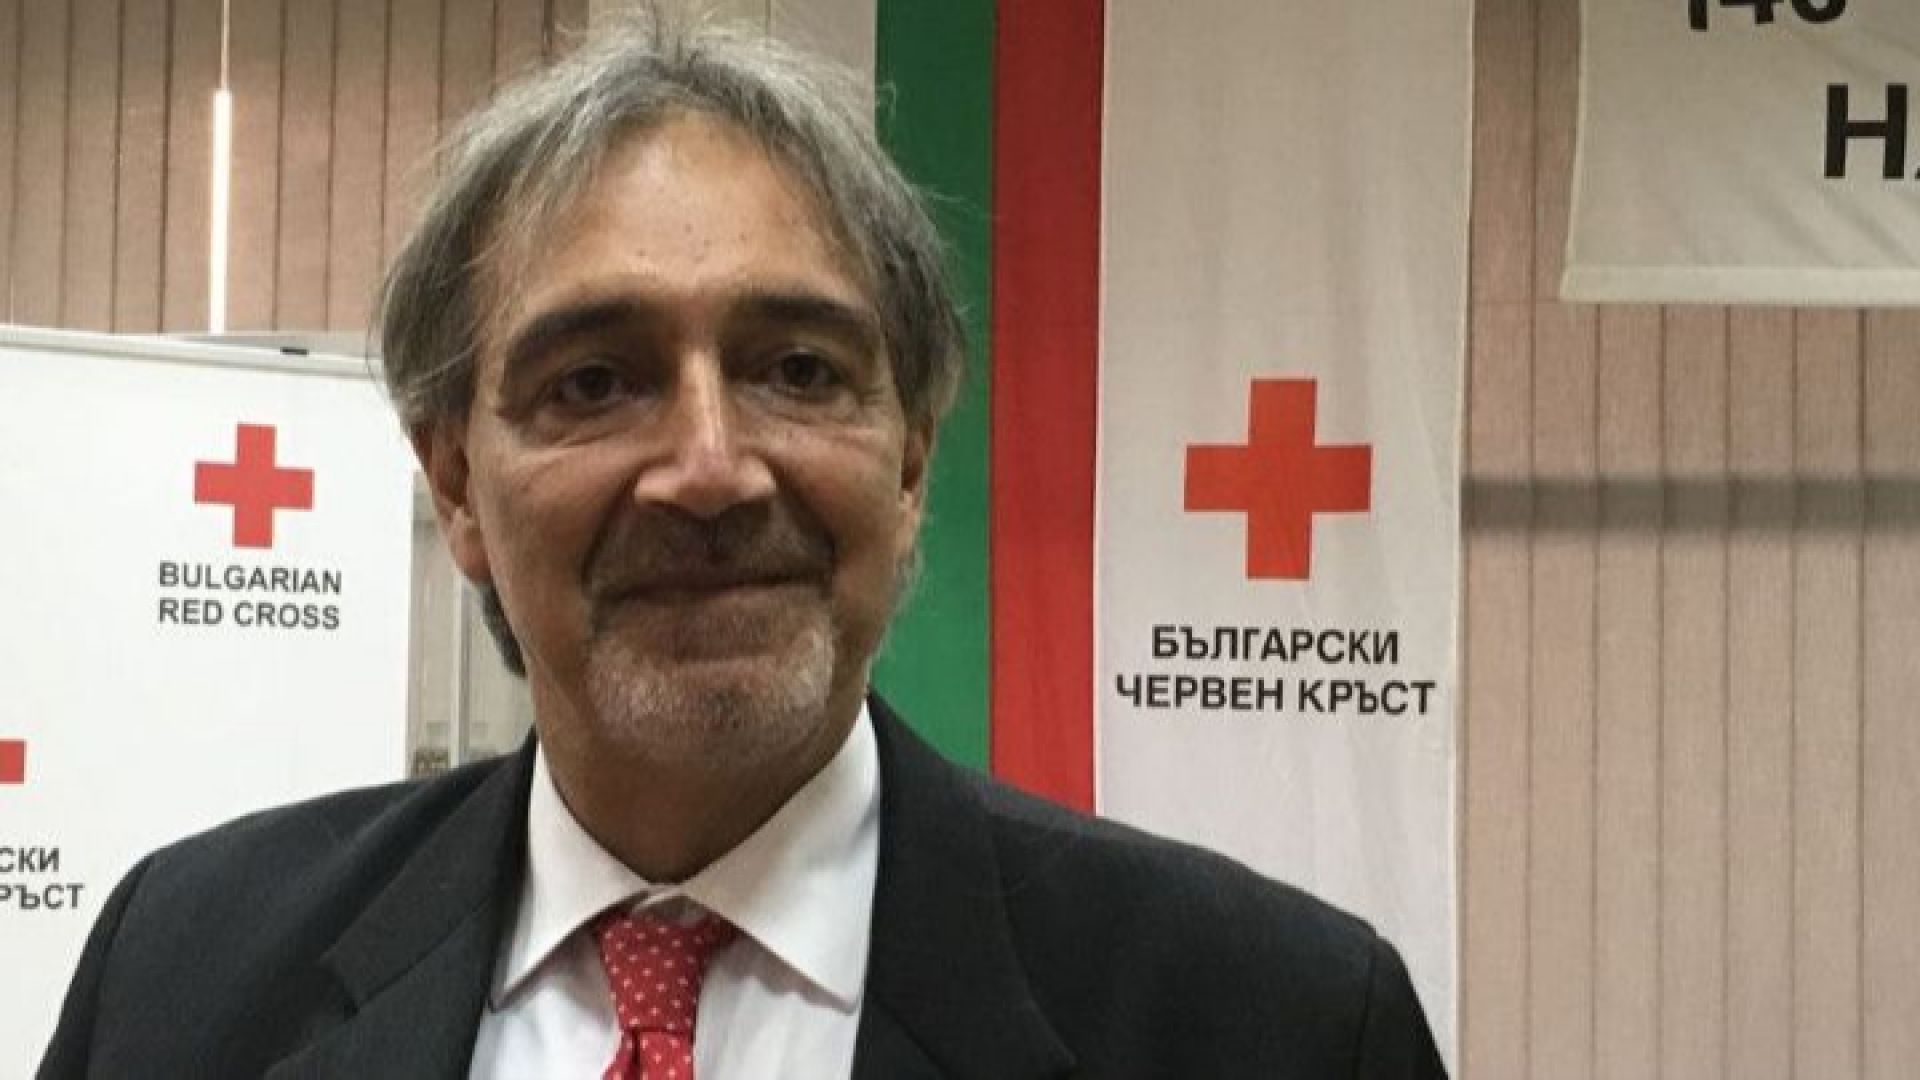 Шефът на Червения кръст: Борете се с втората пандемия - фалшивите новини